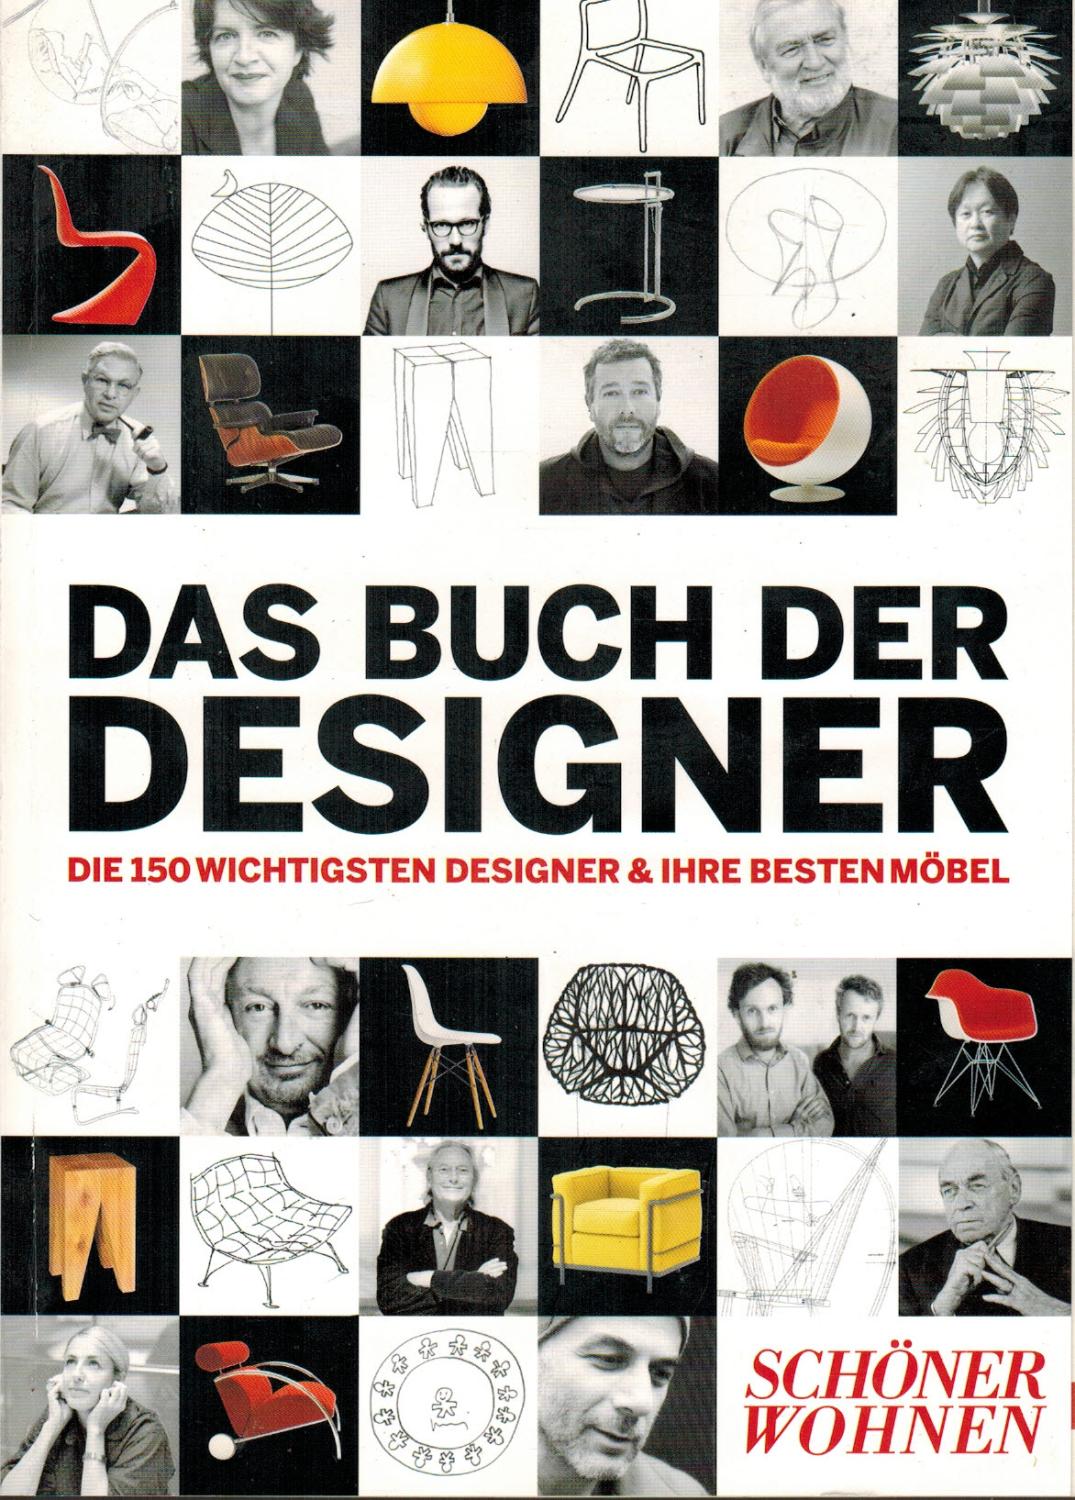 Das Buch Der Designer Die 150 Wichtigsten Designer Ihre Besten Mobel Von Schoner Wohnen Hrsg Good Softcover 10 Paderbuch E Kfm Inh Ralf R Eichmann